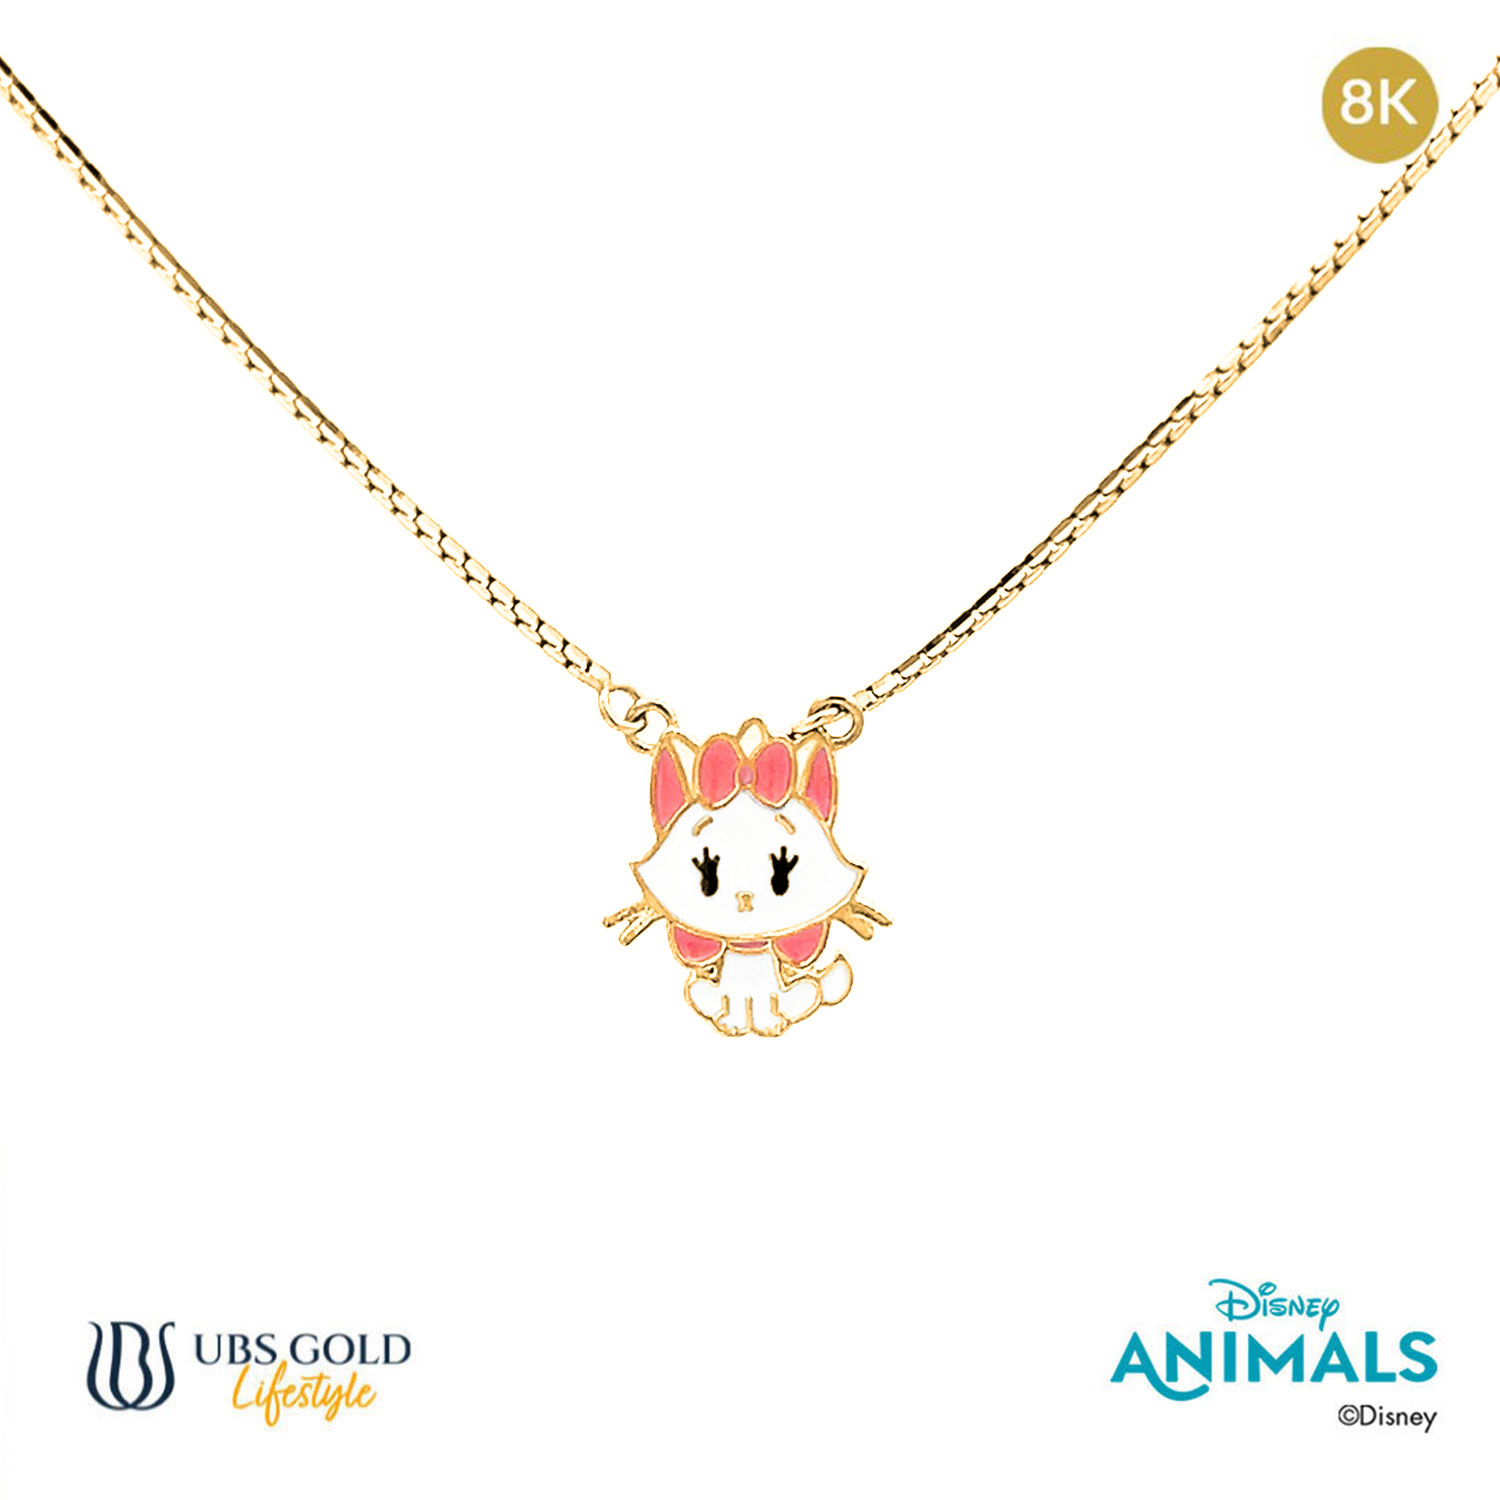 UBS Gold Kalung Emas Anak Disney Animals - Kky0345K - 8K